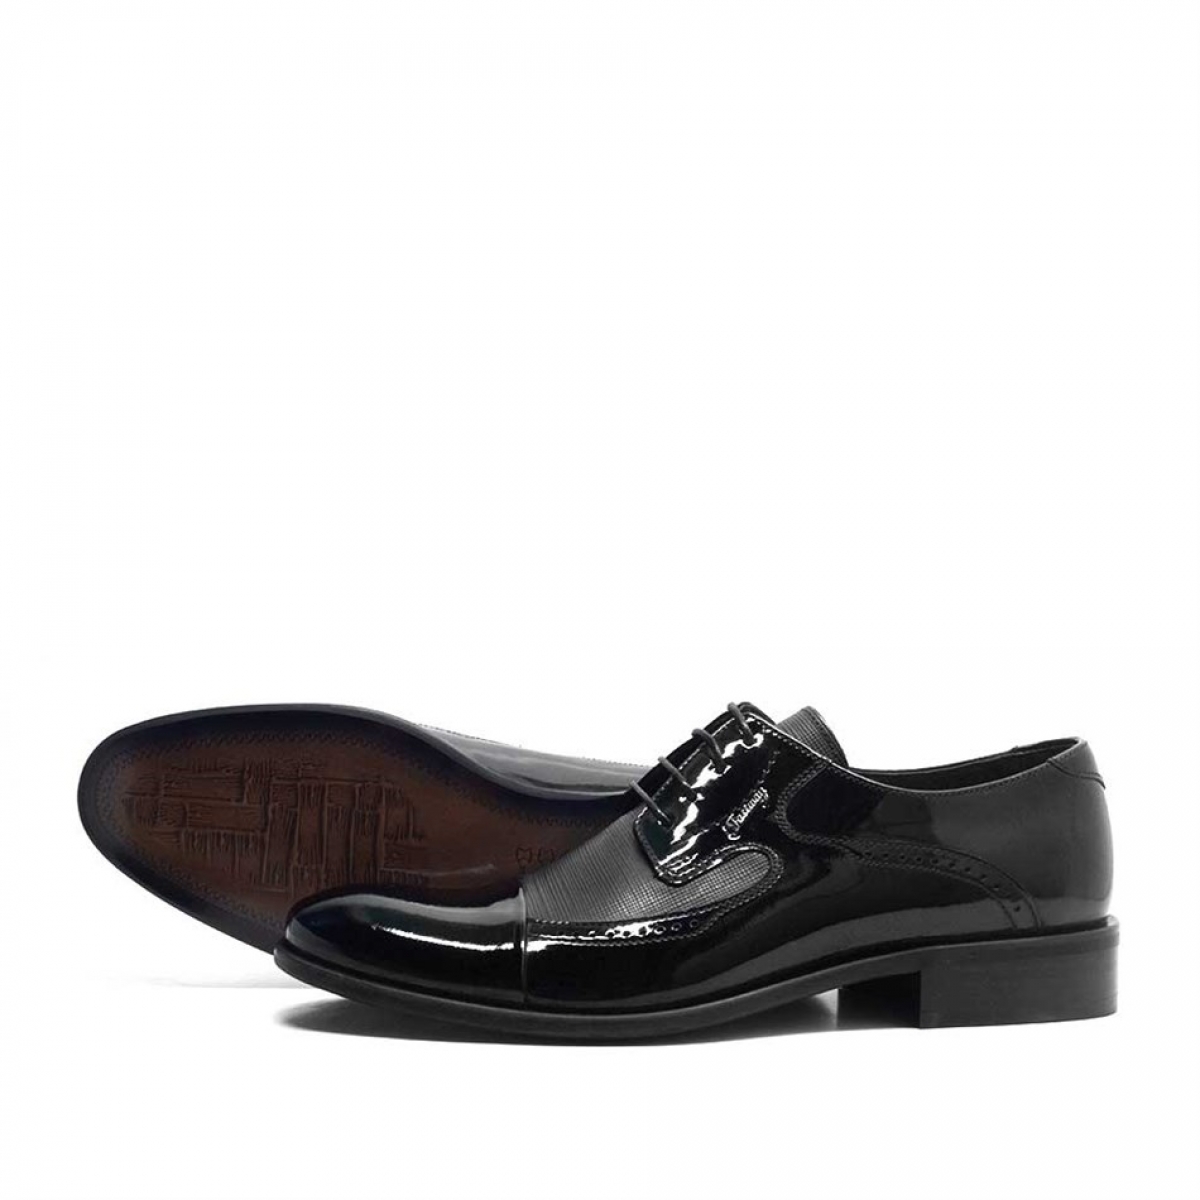 Flo Hakiki Deri Siyah Rugan Bağcıklı Klasik Erkek Ayakkabı. 4